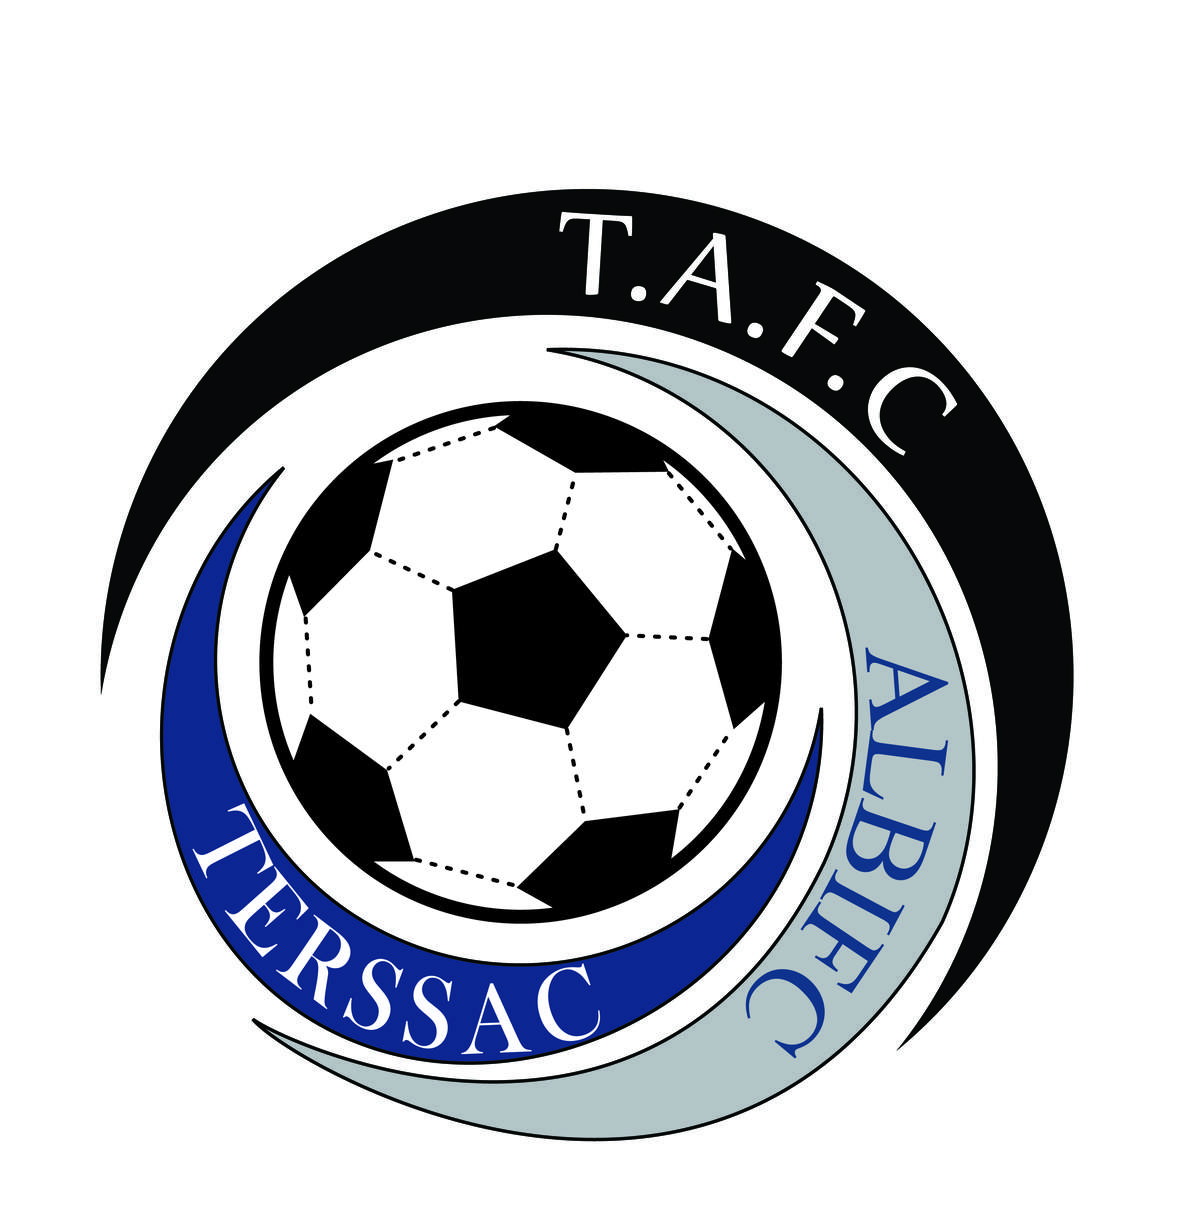 TERSSAC AFC